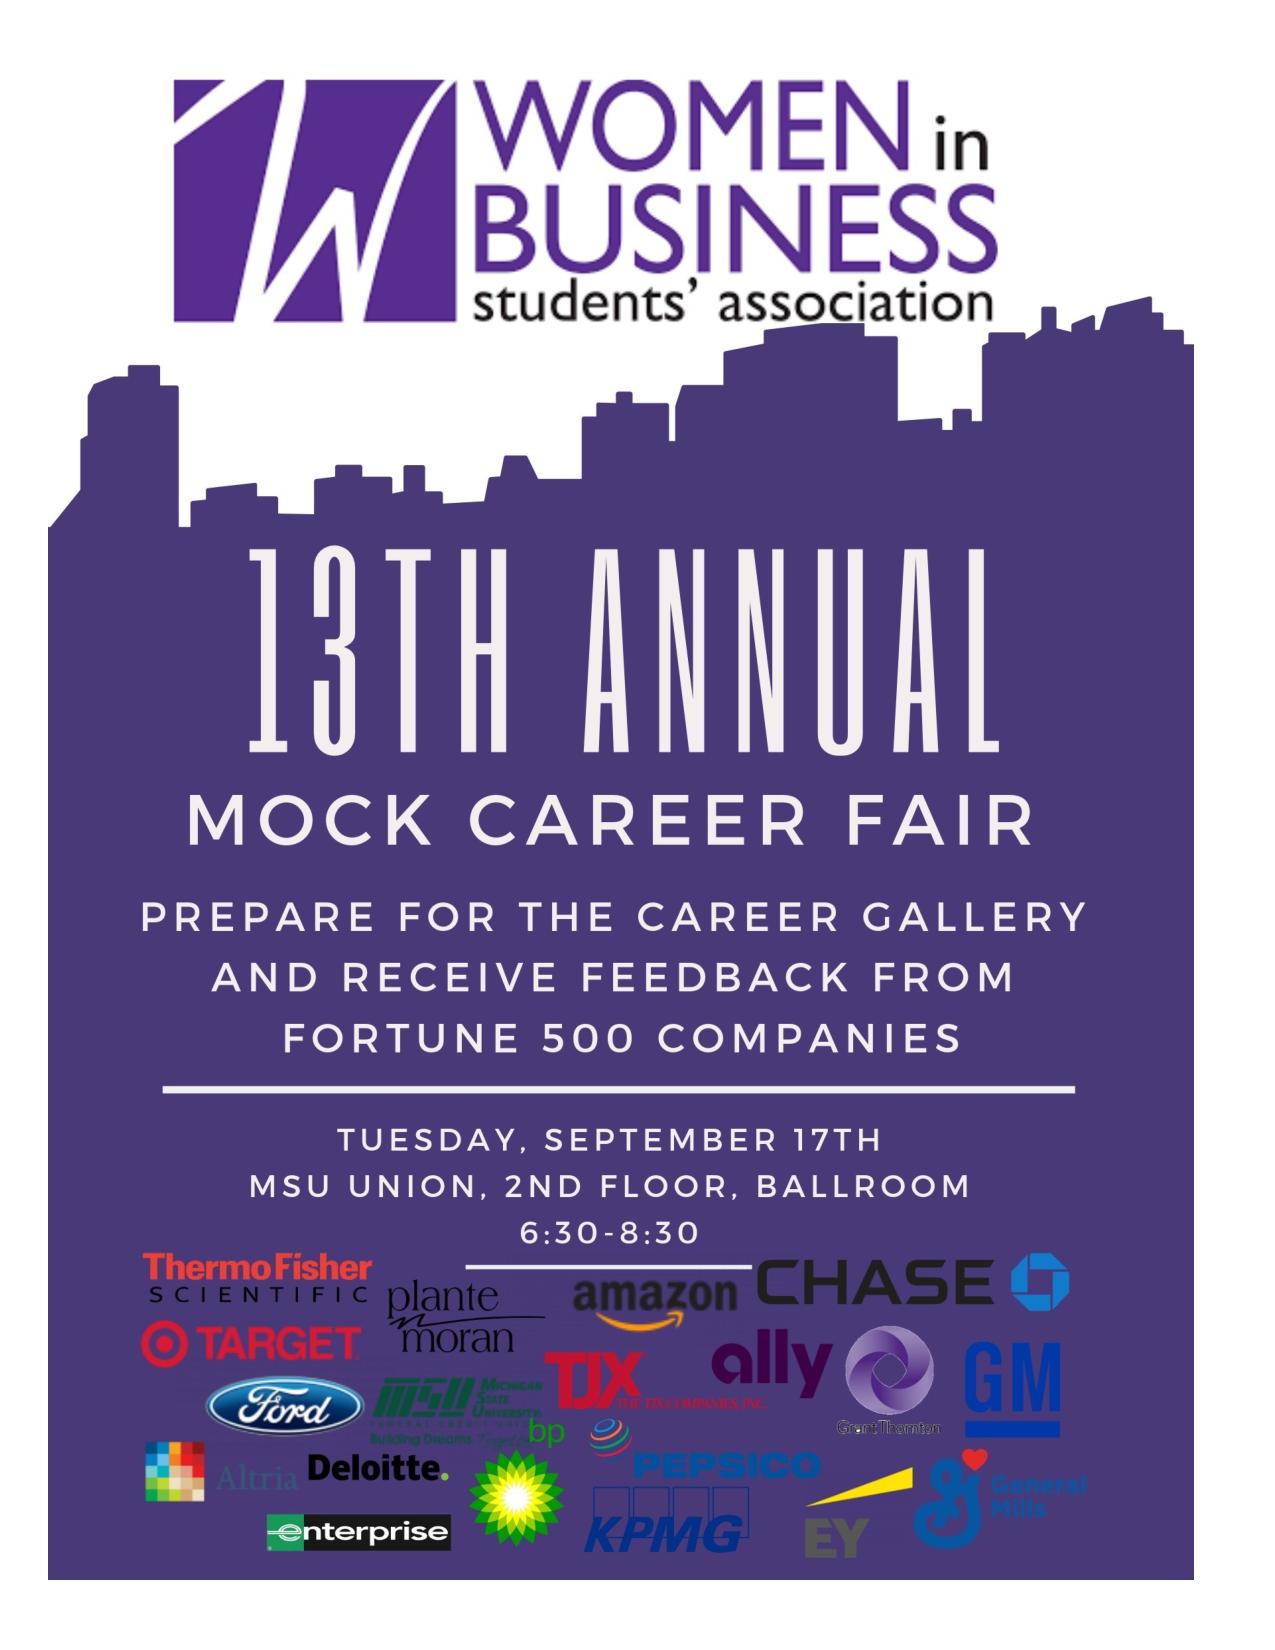 13th Annual Mock Career Fair